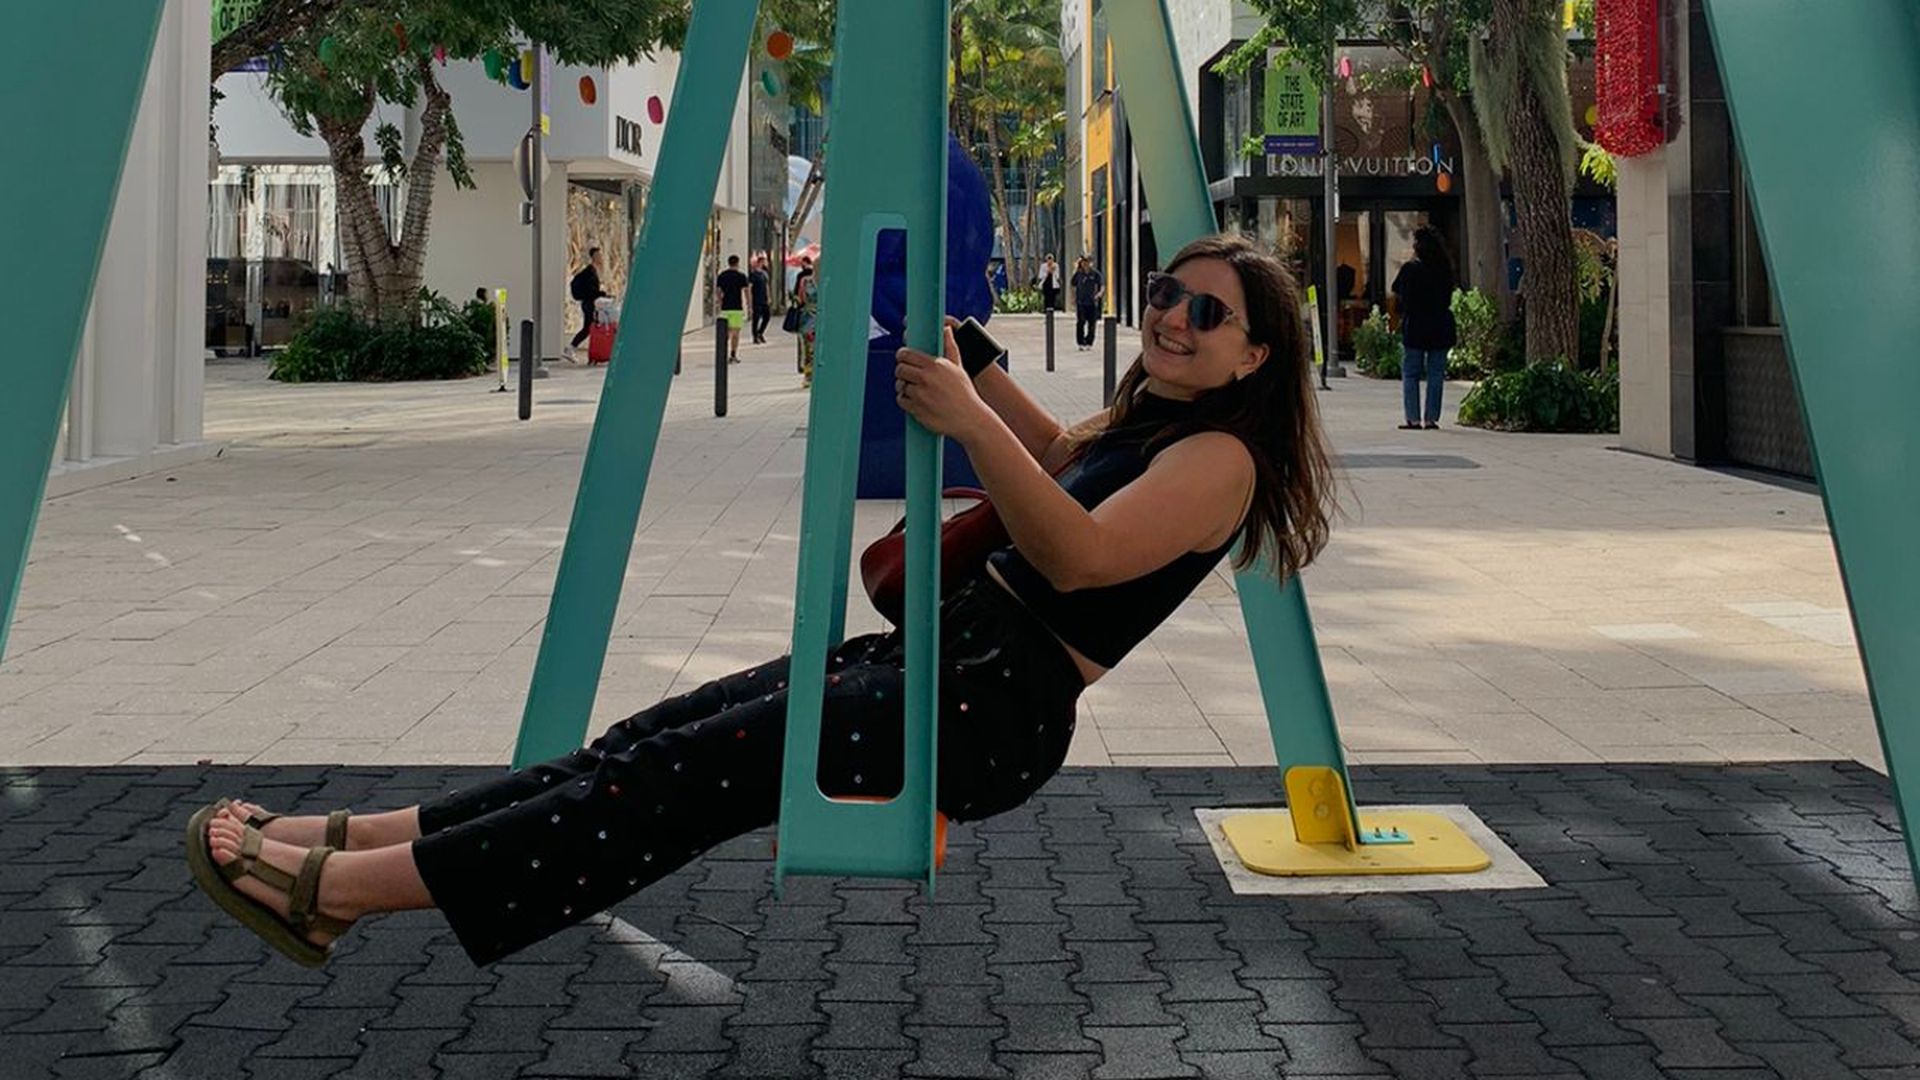 Kady Murzin swings on a giant swing while wearing sunglasses